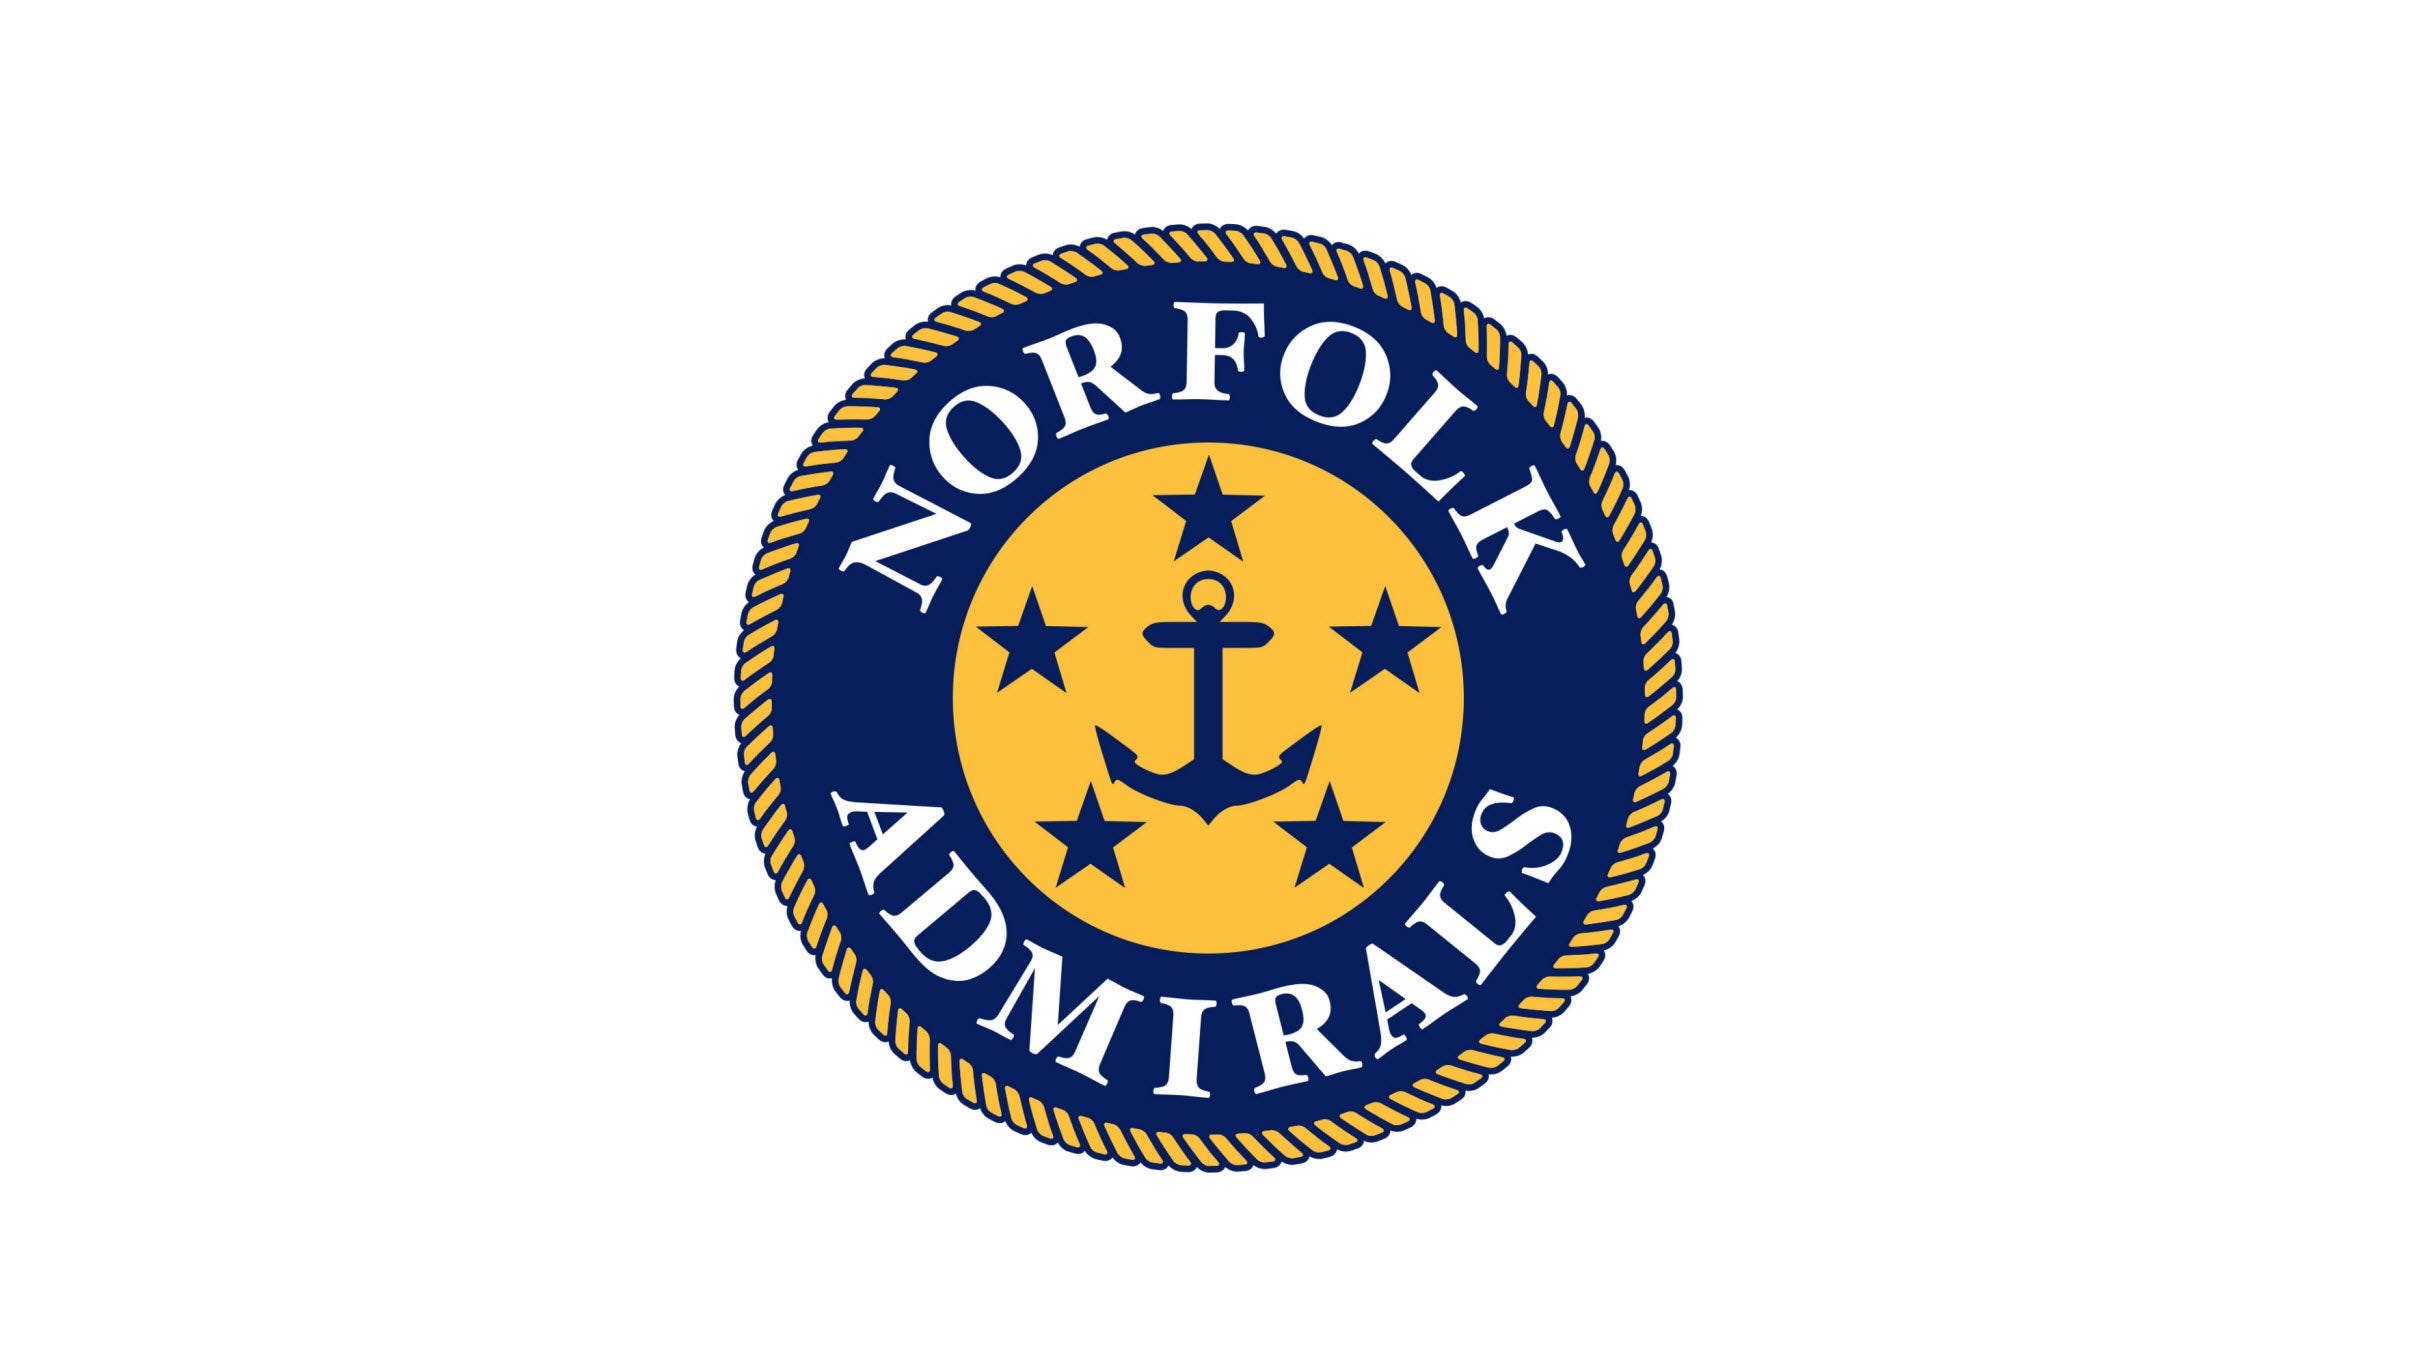 Norfolk Admirals - Playoff Game 1 at Scope Arena